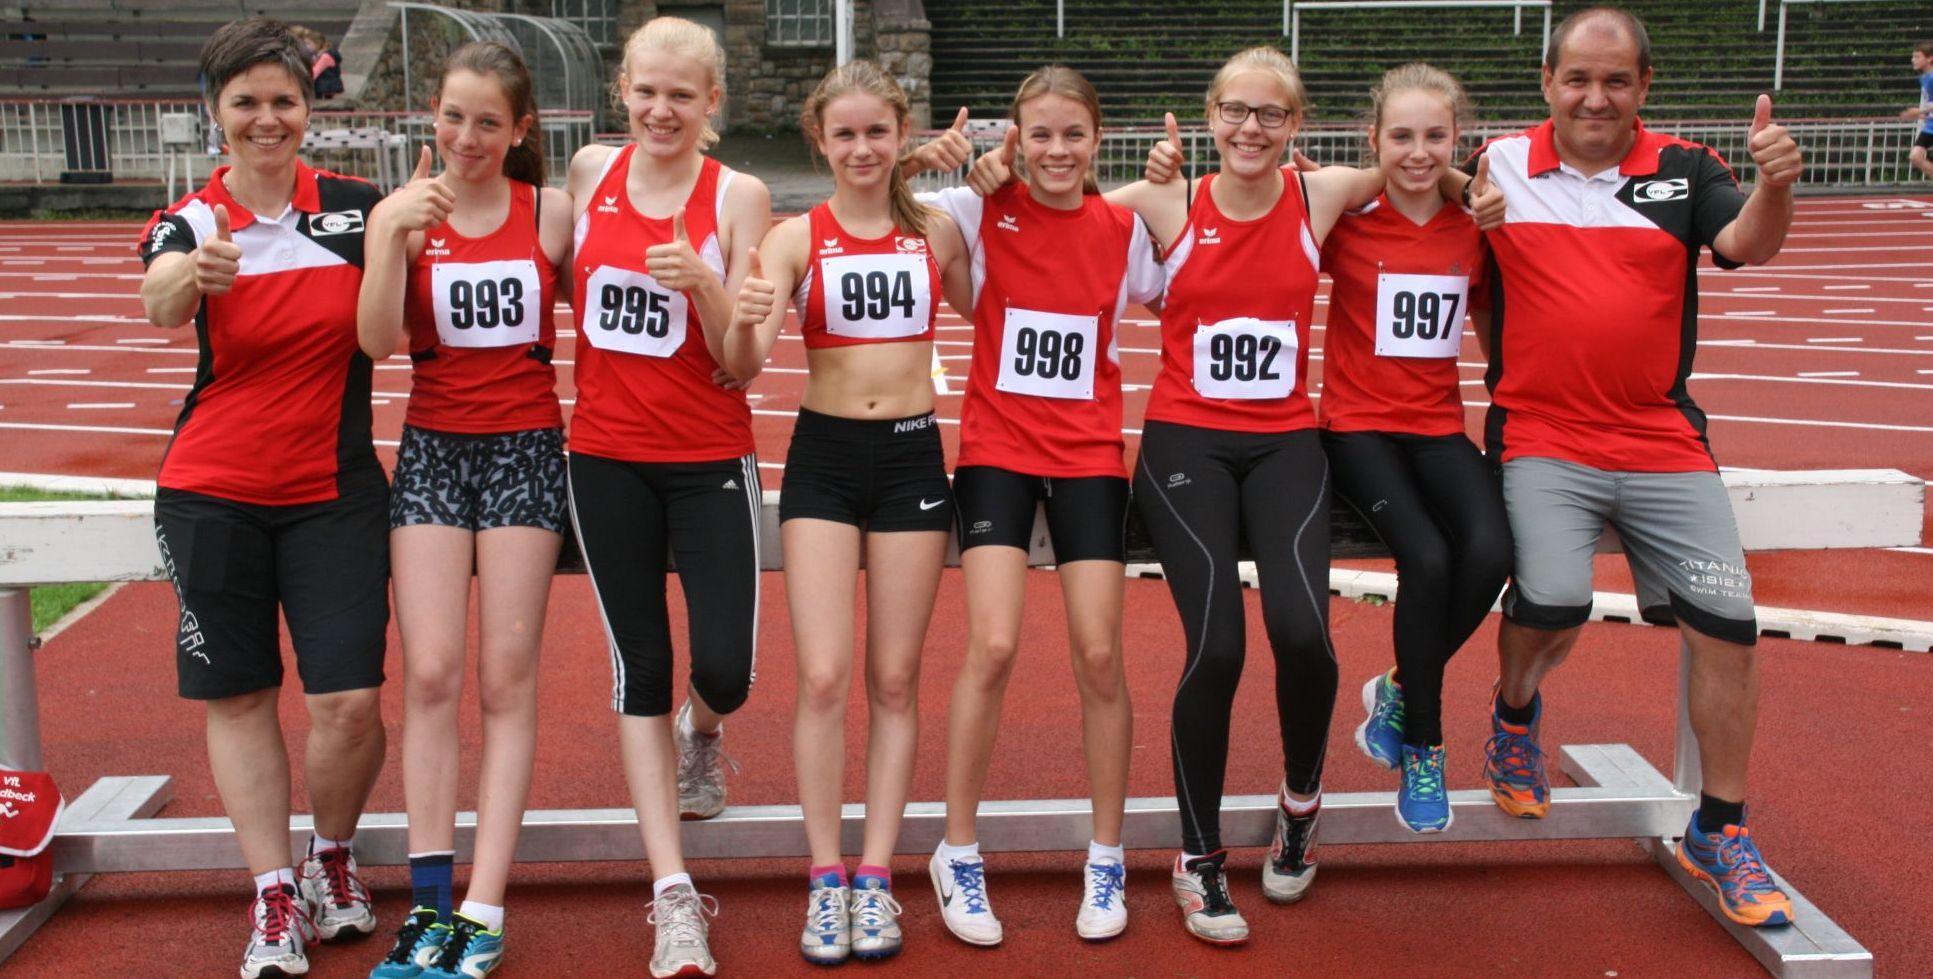 U14-Mädchen mit starker Leistung beim Mannschafts-Vorkampf - VfL Gladbeck -...